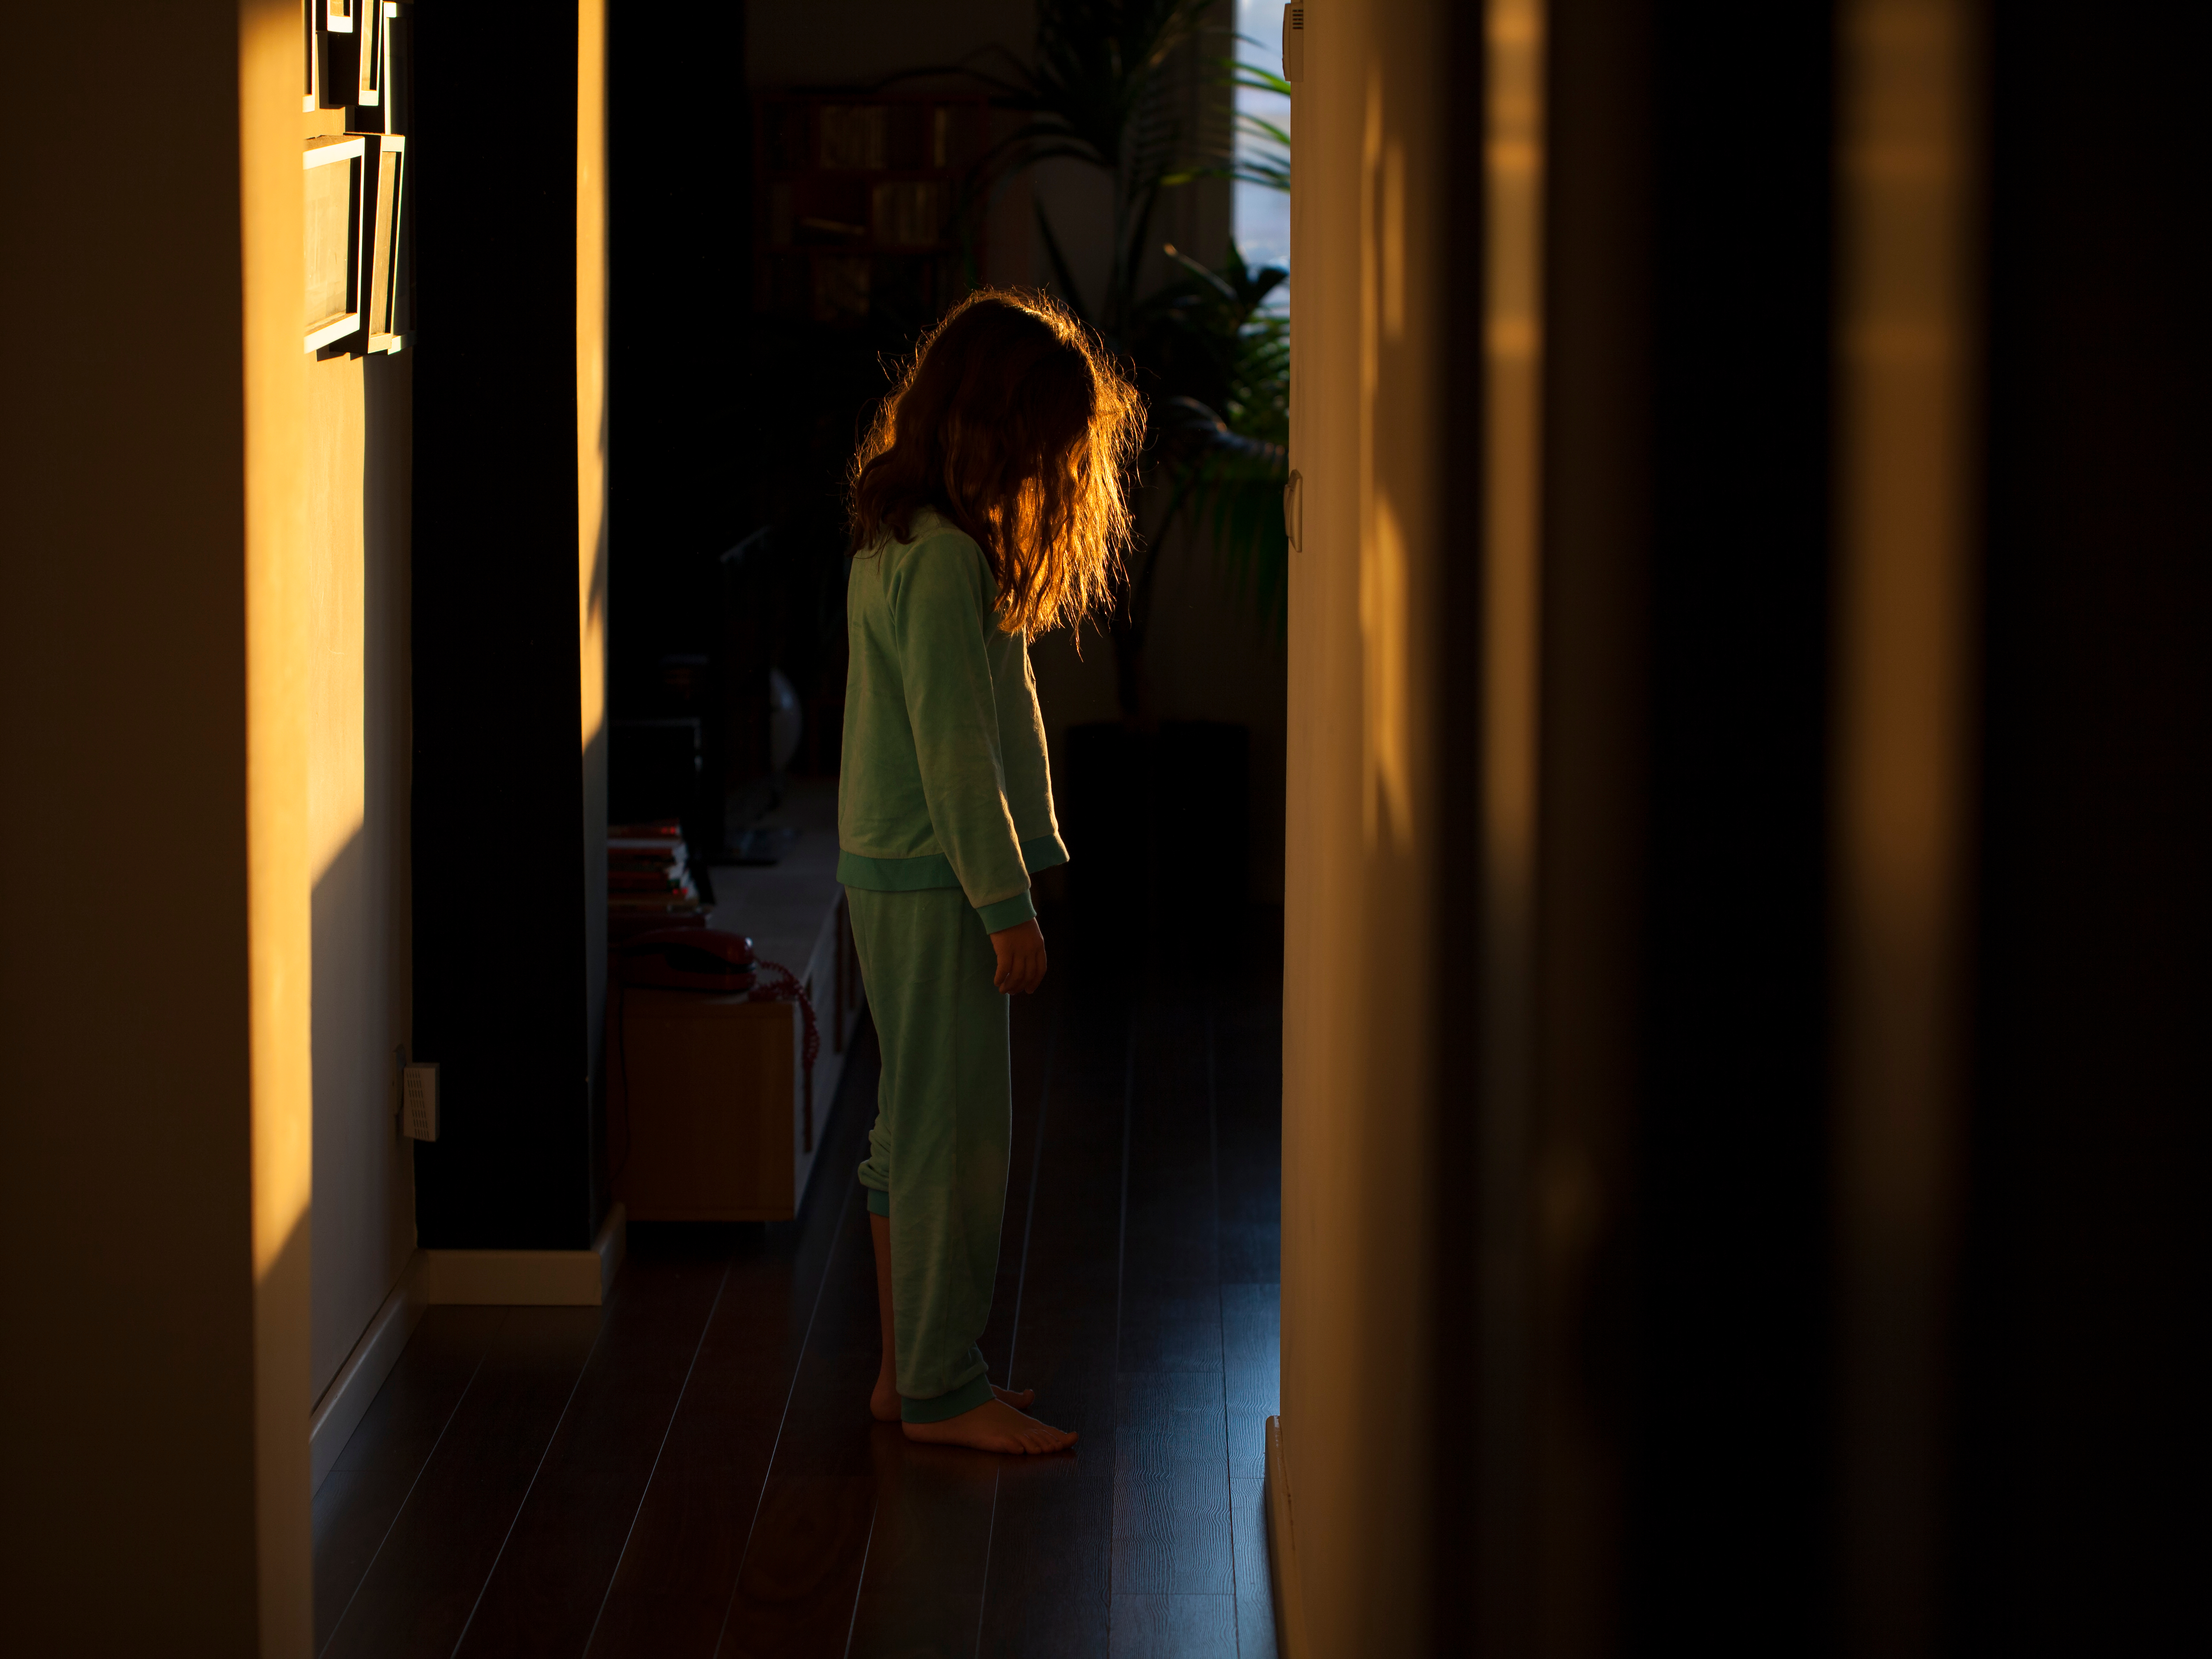 Sleepwalking little girl in the corridor. | Source: Shutterstock